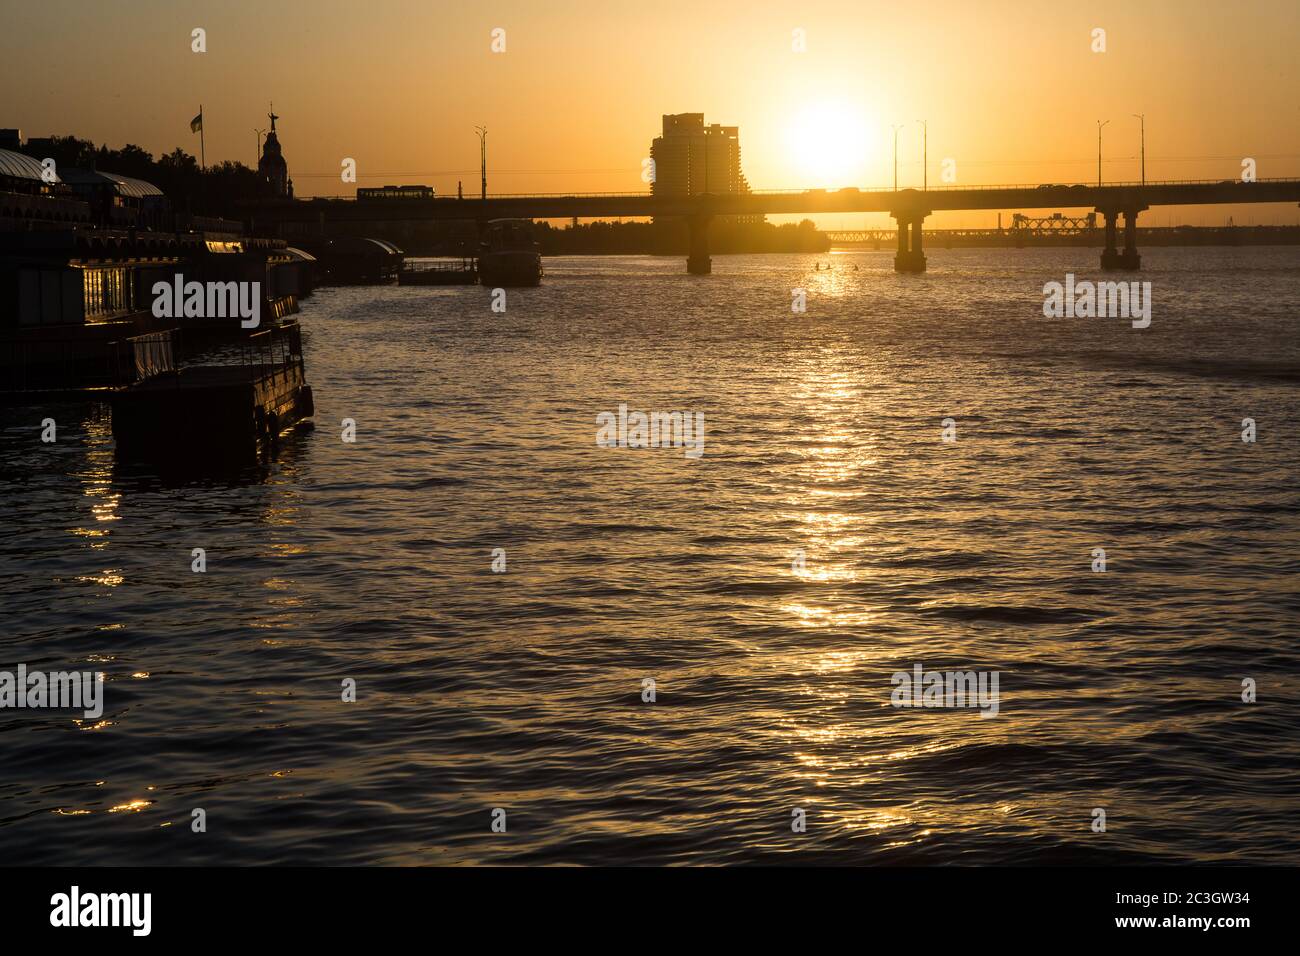 Ricco tramonto estivo colorato a Dnepropetrovsk (Dnept, Dnipro) nel mese di giugno con Parus cantiere incompiuto + due ponti sul fiume nello skyline Foto Stock